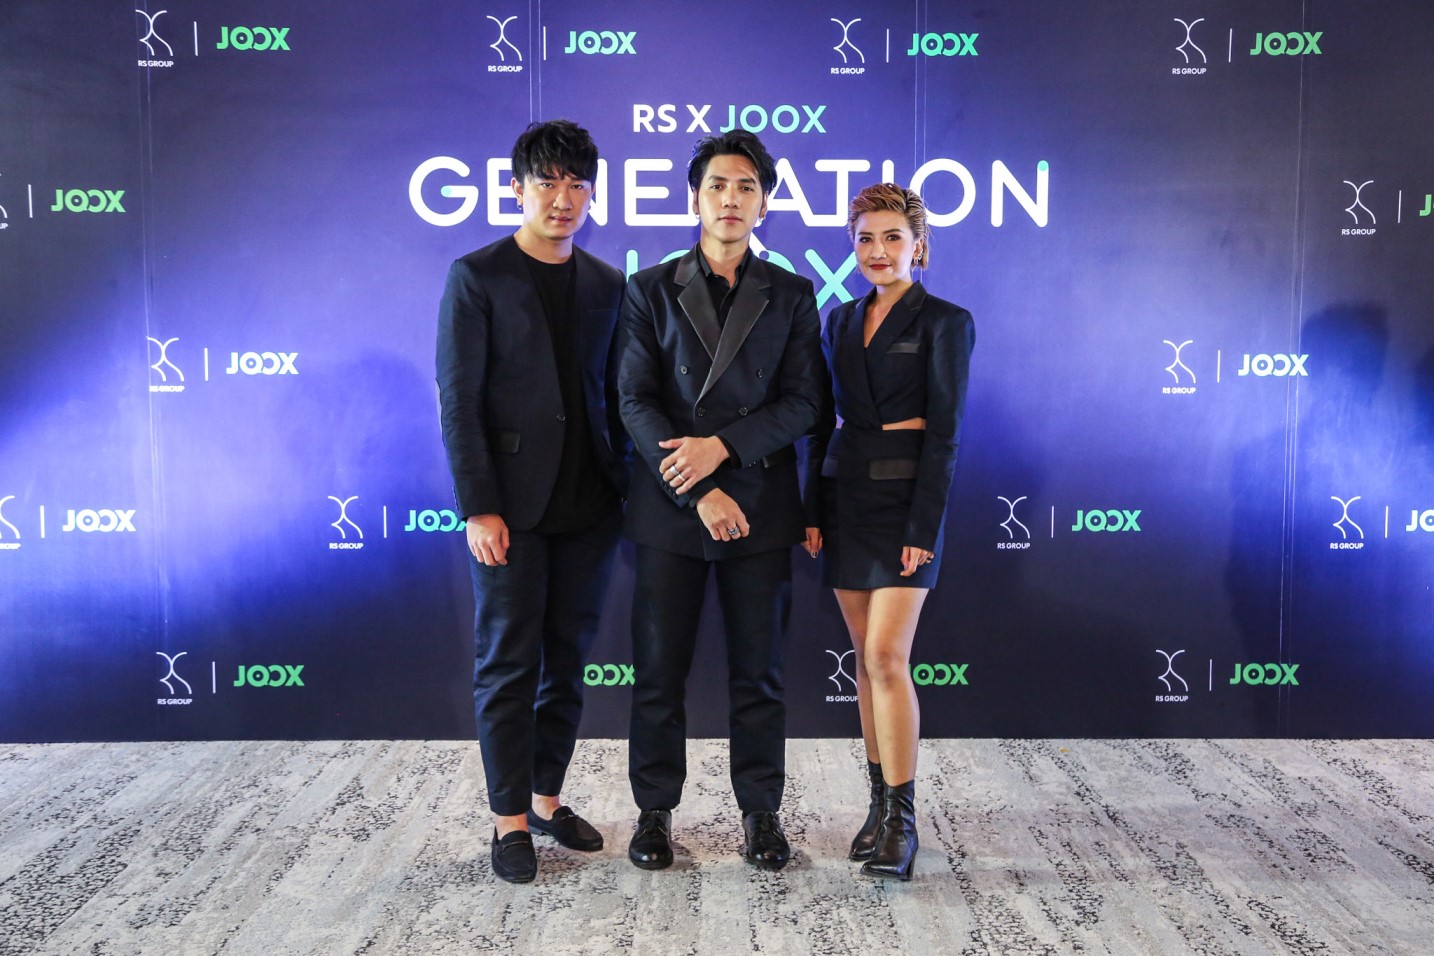 RS x JOOX GENERATION JOOX